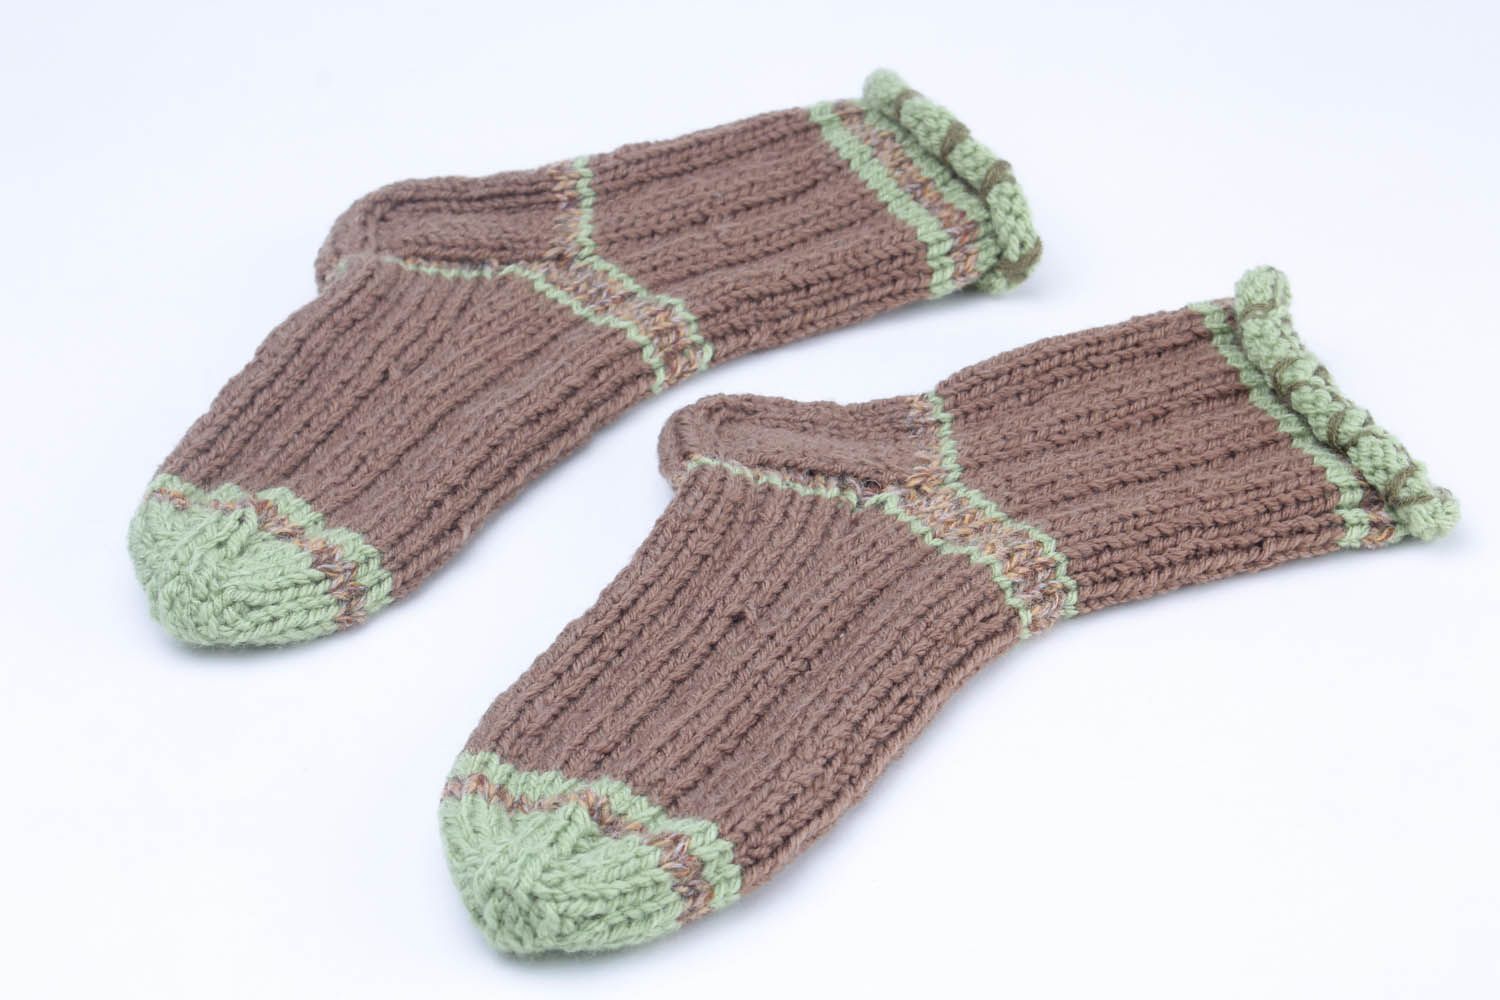 Knitted semi-woolen socks photo 3